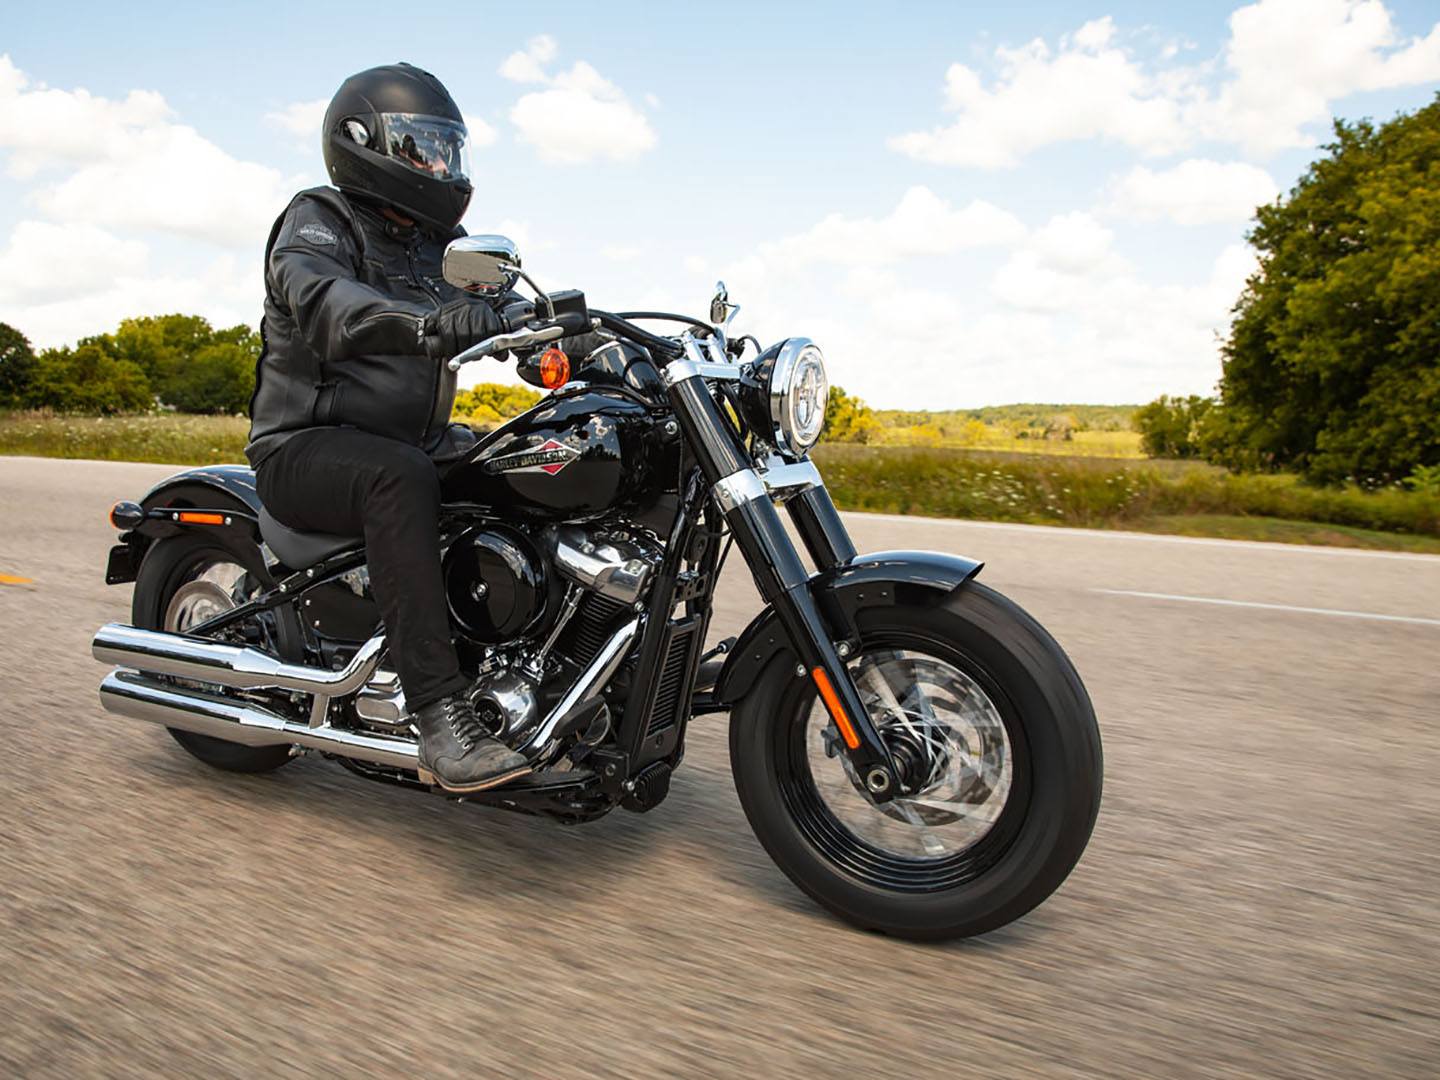 2021 Harley-Davidson Softail Slim® in Logan, Utah